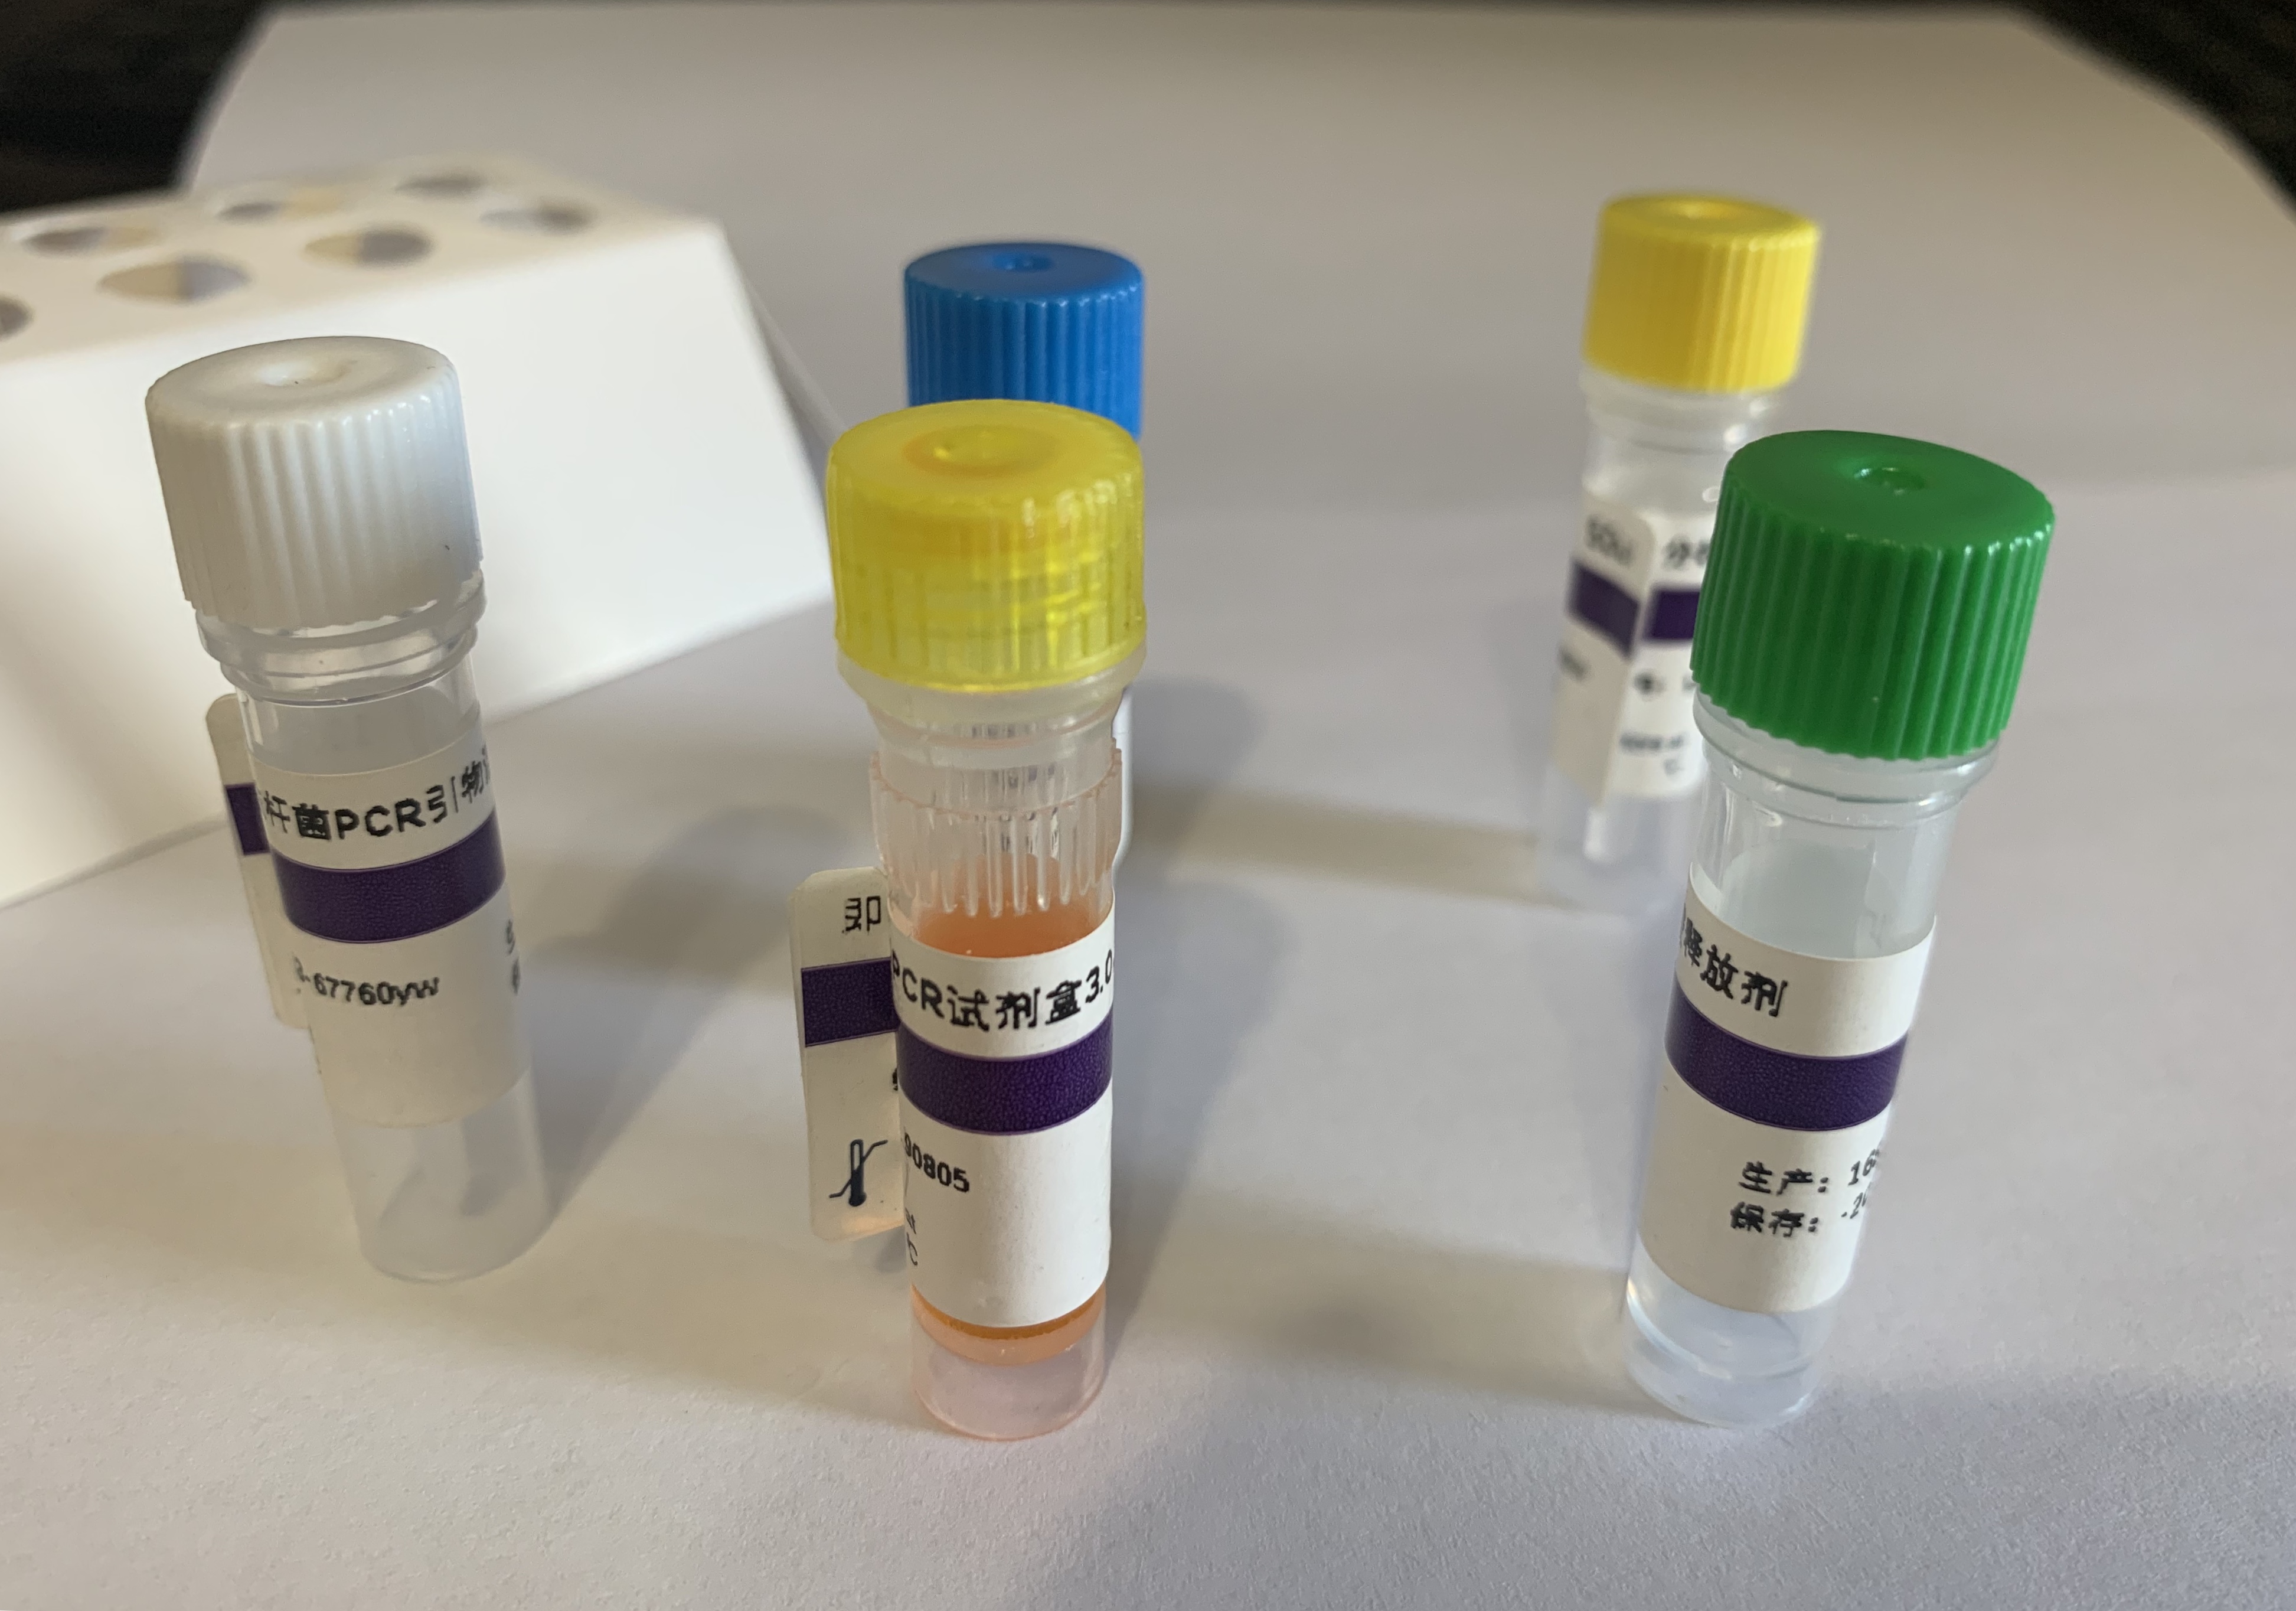 小鼠骨髓瘤细胞基因组DNA残留探针法荧光定量PCR试剂盒(不含内参)